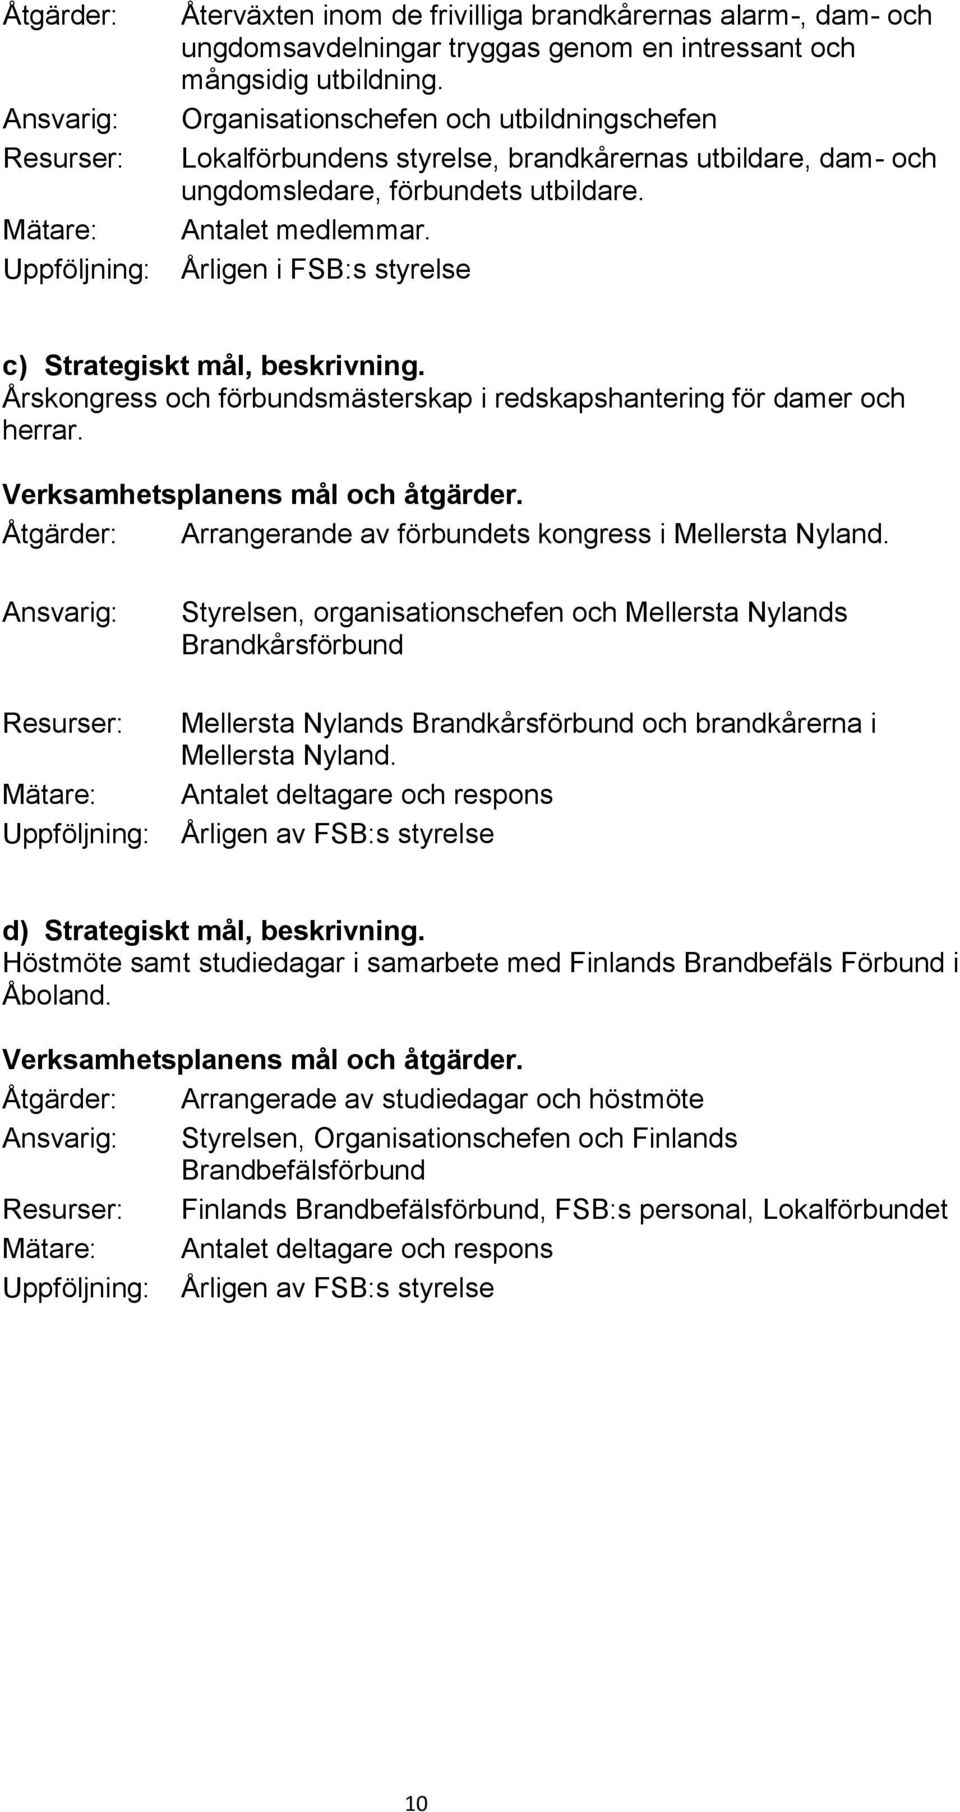 Årligen i FSB:s styrelse c) Strategiskt mål, beskrivning. Årskongress och förbundsmästerskap i redskapshantering för damer och herrar. Åtgärder: Arrangerande av förbundets kongress i Mellersta Nyland.